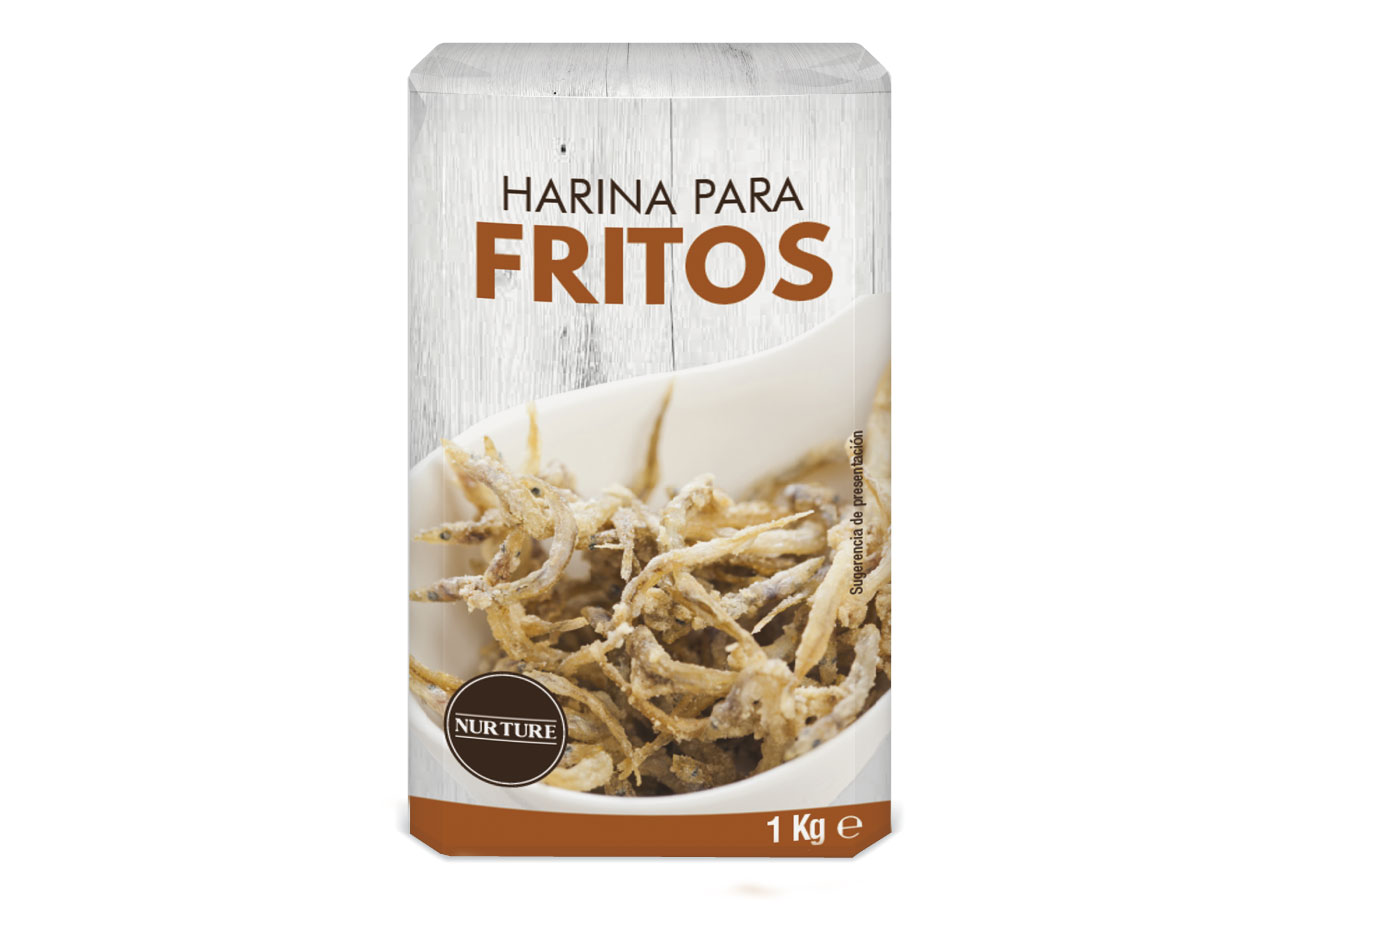 Packaging Harinas Para Fritos